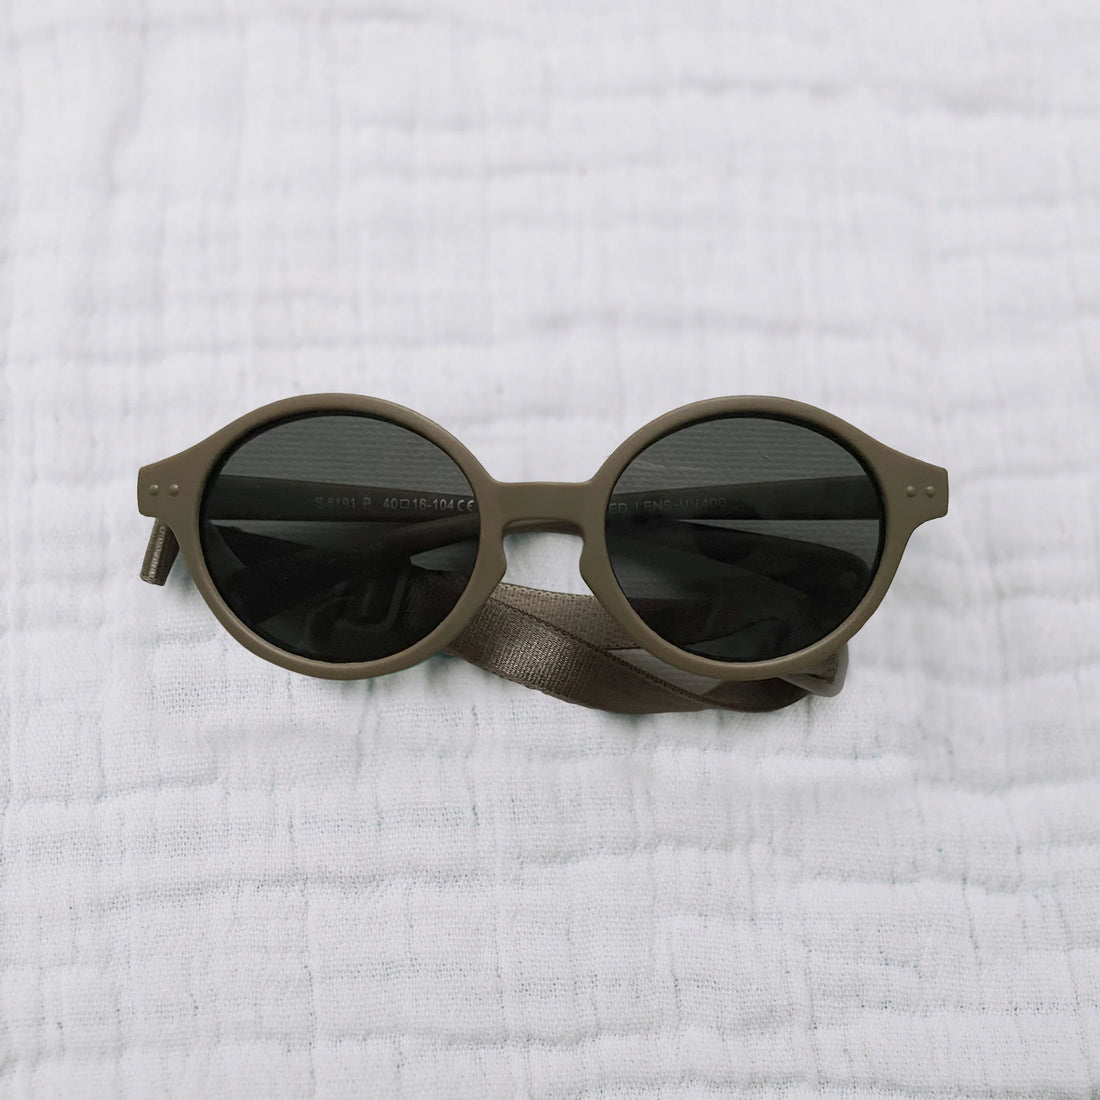 Honeysuckle Swim Co - Sunglasses (Round Latte) 6-36M